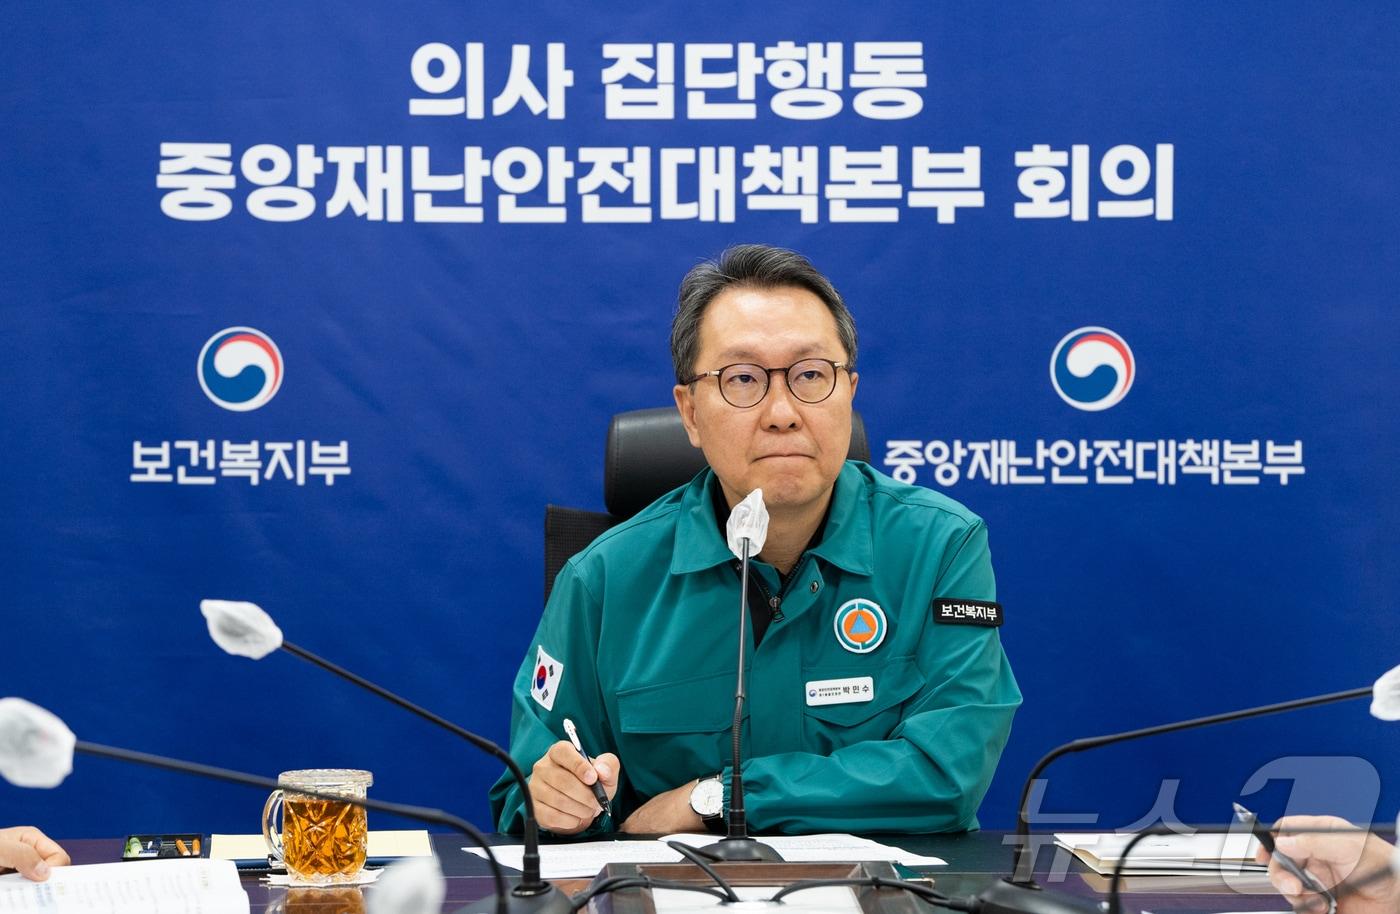 박민수 보건복지부 제2차관이 21일 오전 열린 중앙사고수습본부 브리핑에서 발언하고 있다.